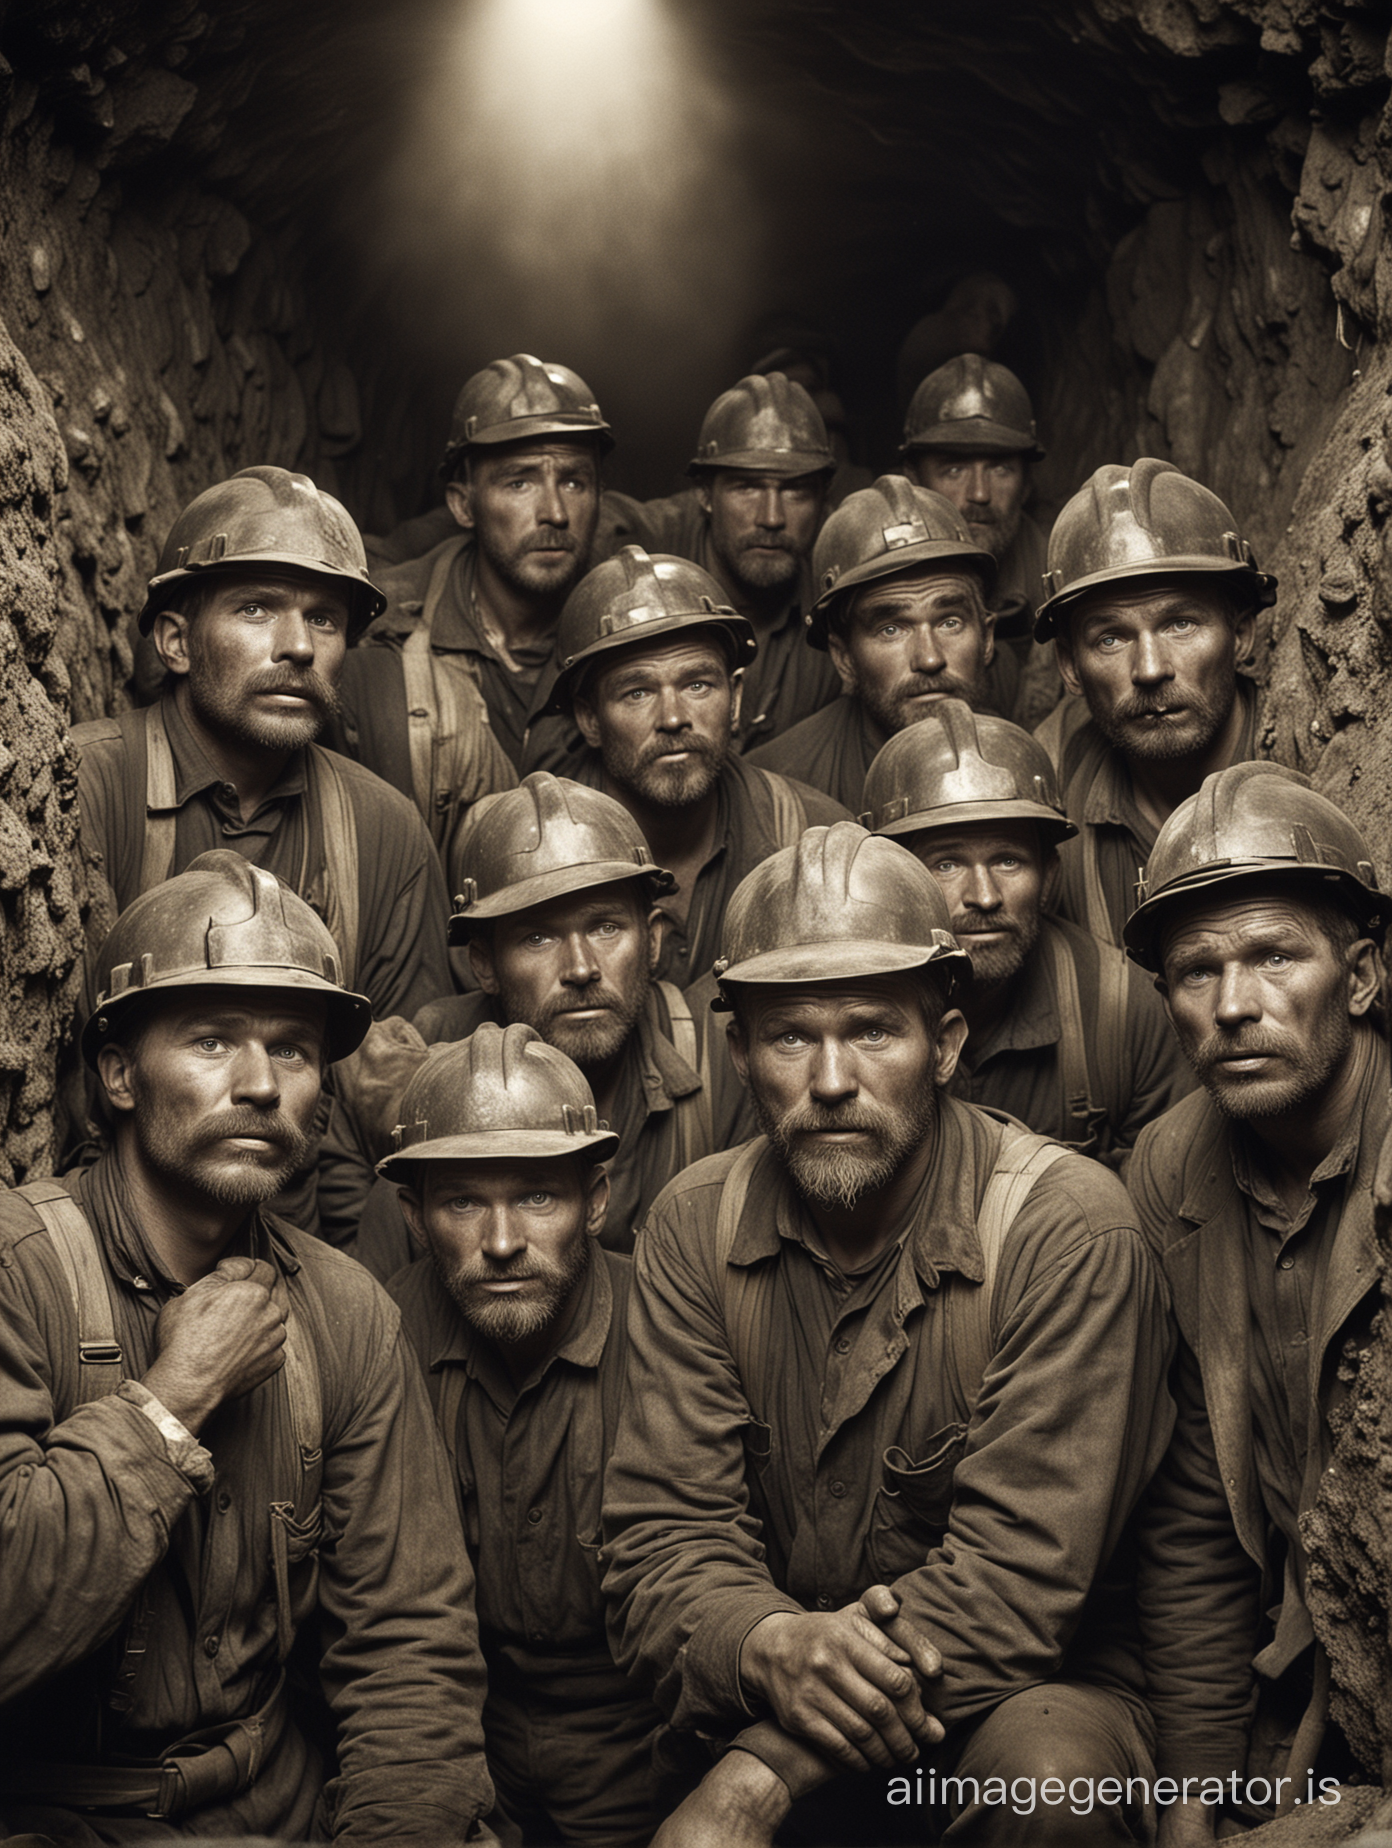 un groupe de mineurs polonais travaillant durement dans une mine souterraine, fatigue, visages sales en 1890